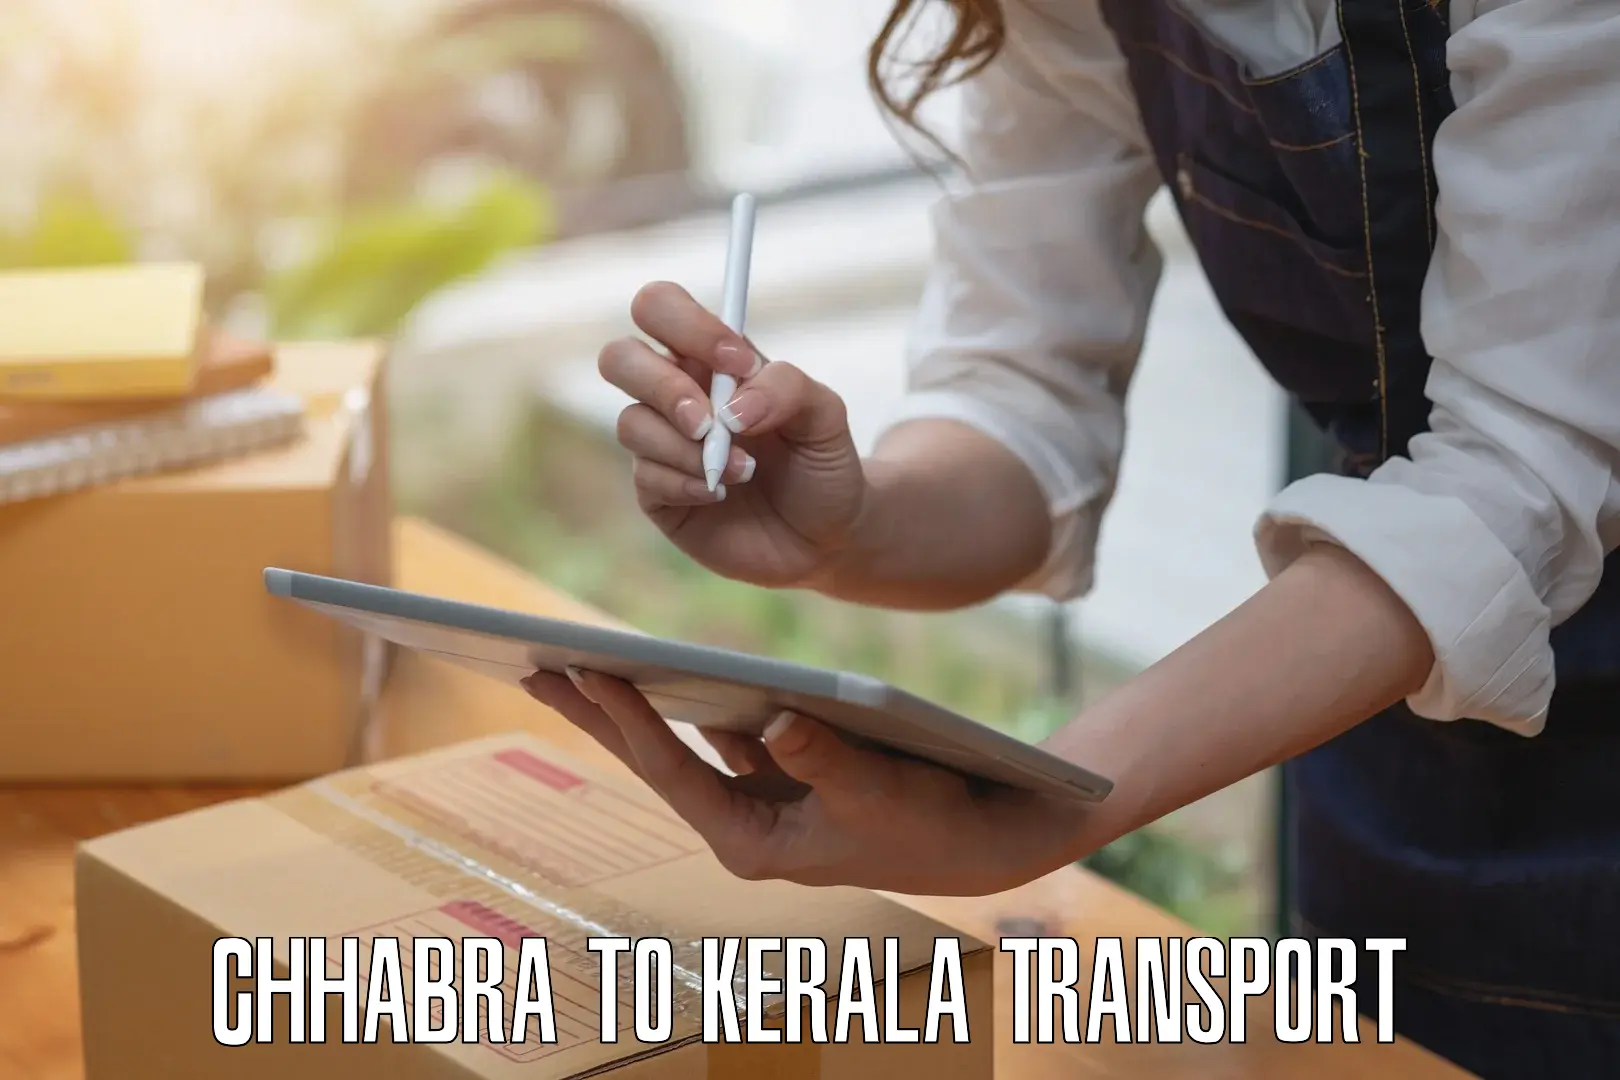 Express transport services Chhabra to Kakkayam